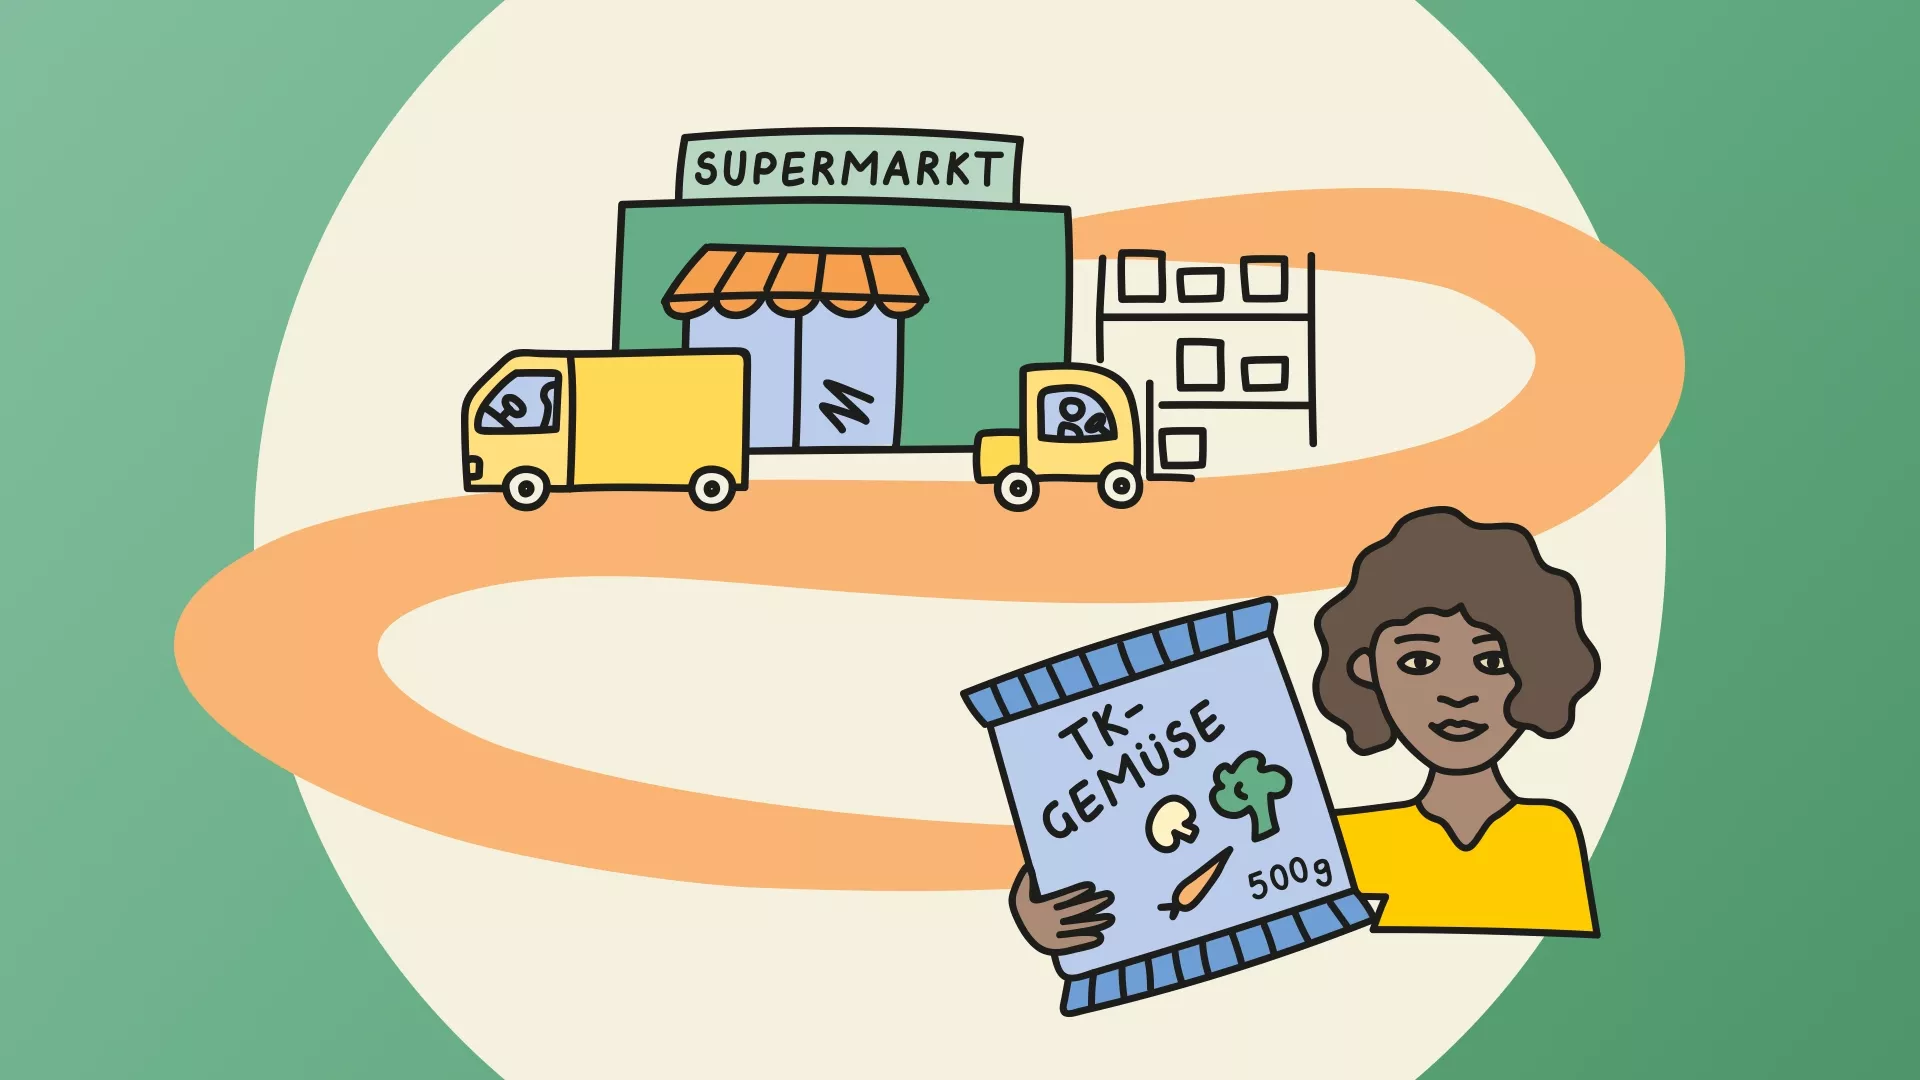 Referenzen NABU Transportverpackungen | Illustration vom Supermarkt zum Verbraucher